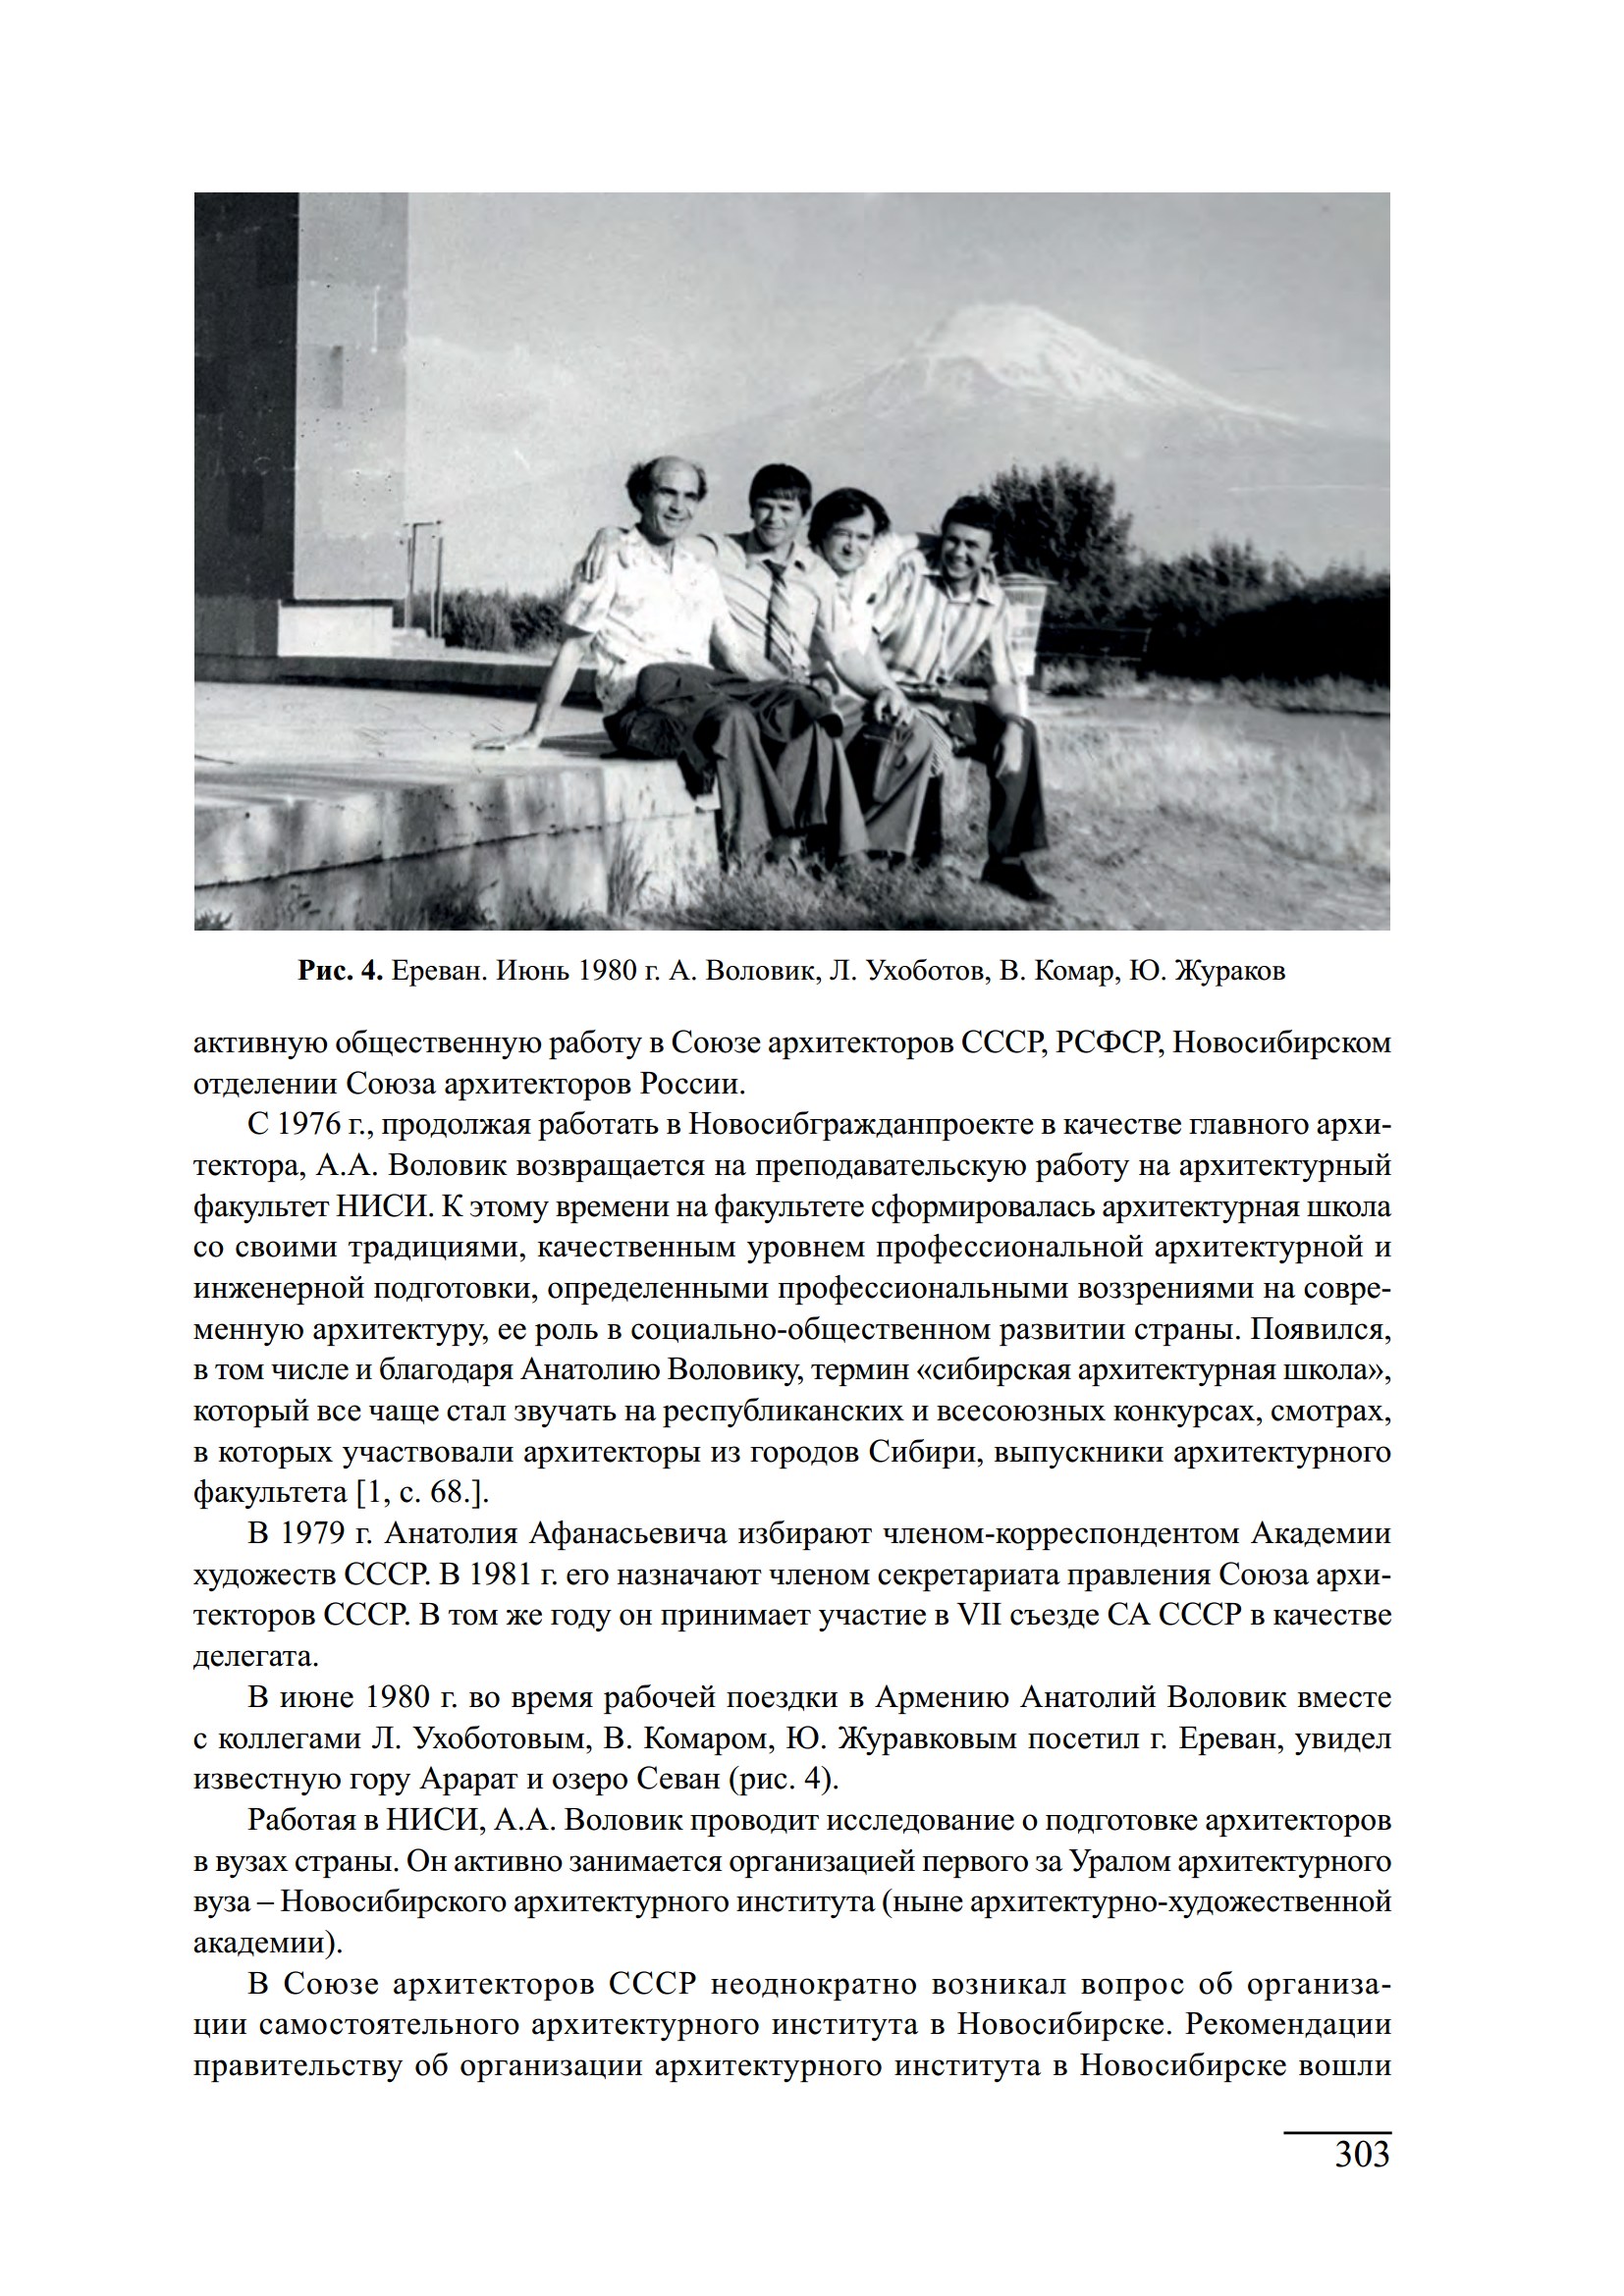 Баландинские чтения : Сборник статей VIII научных чтений памяти С. Н. Баландина, Новосибирск, 18—20 апреля 2013 г.